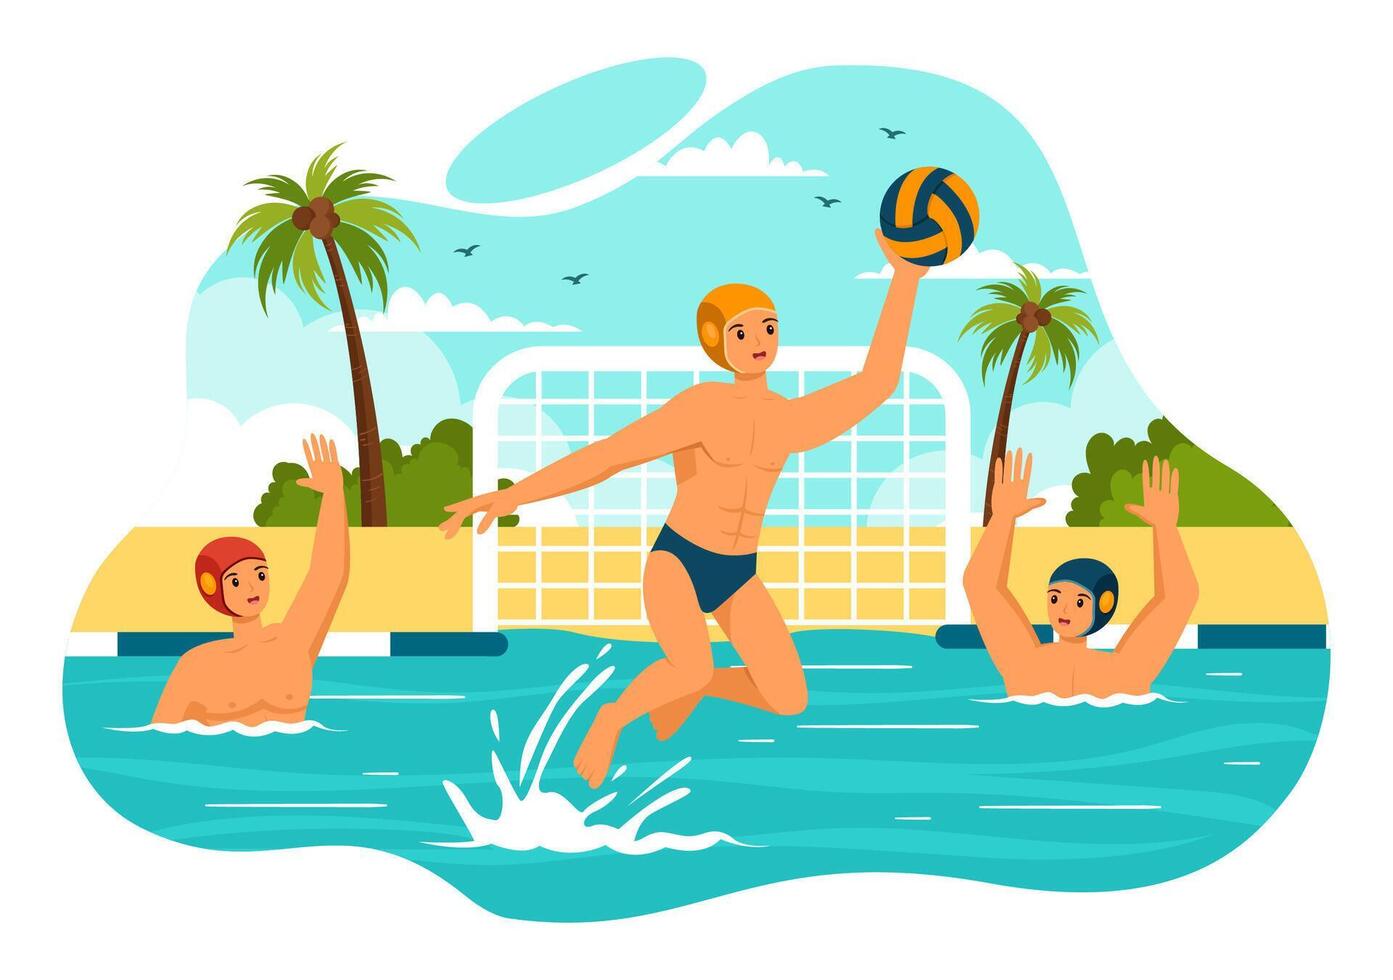 agua polo deporte vector ilustración con jugador jugando a lanzar el pelota en el del oponente objetivo en el nadando piscina en plano dibujos animados antecedentes